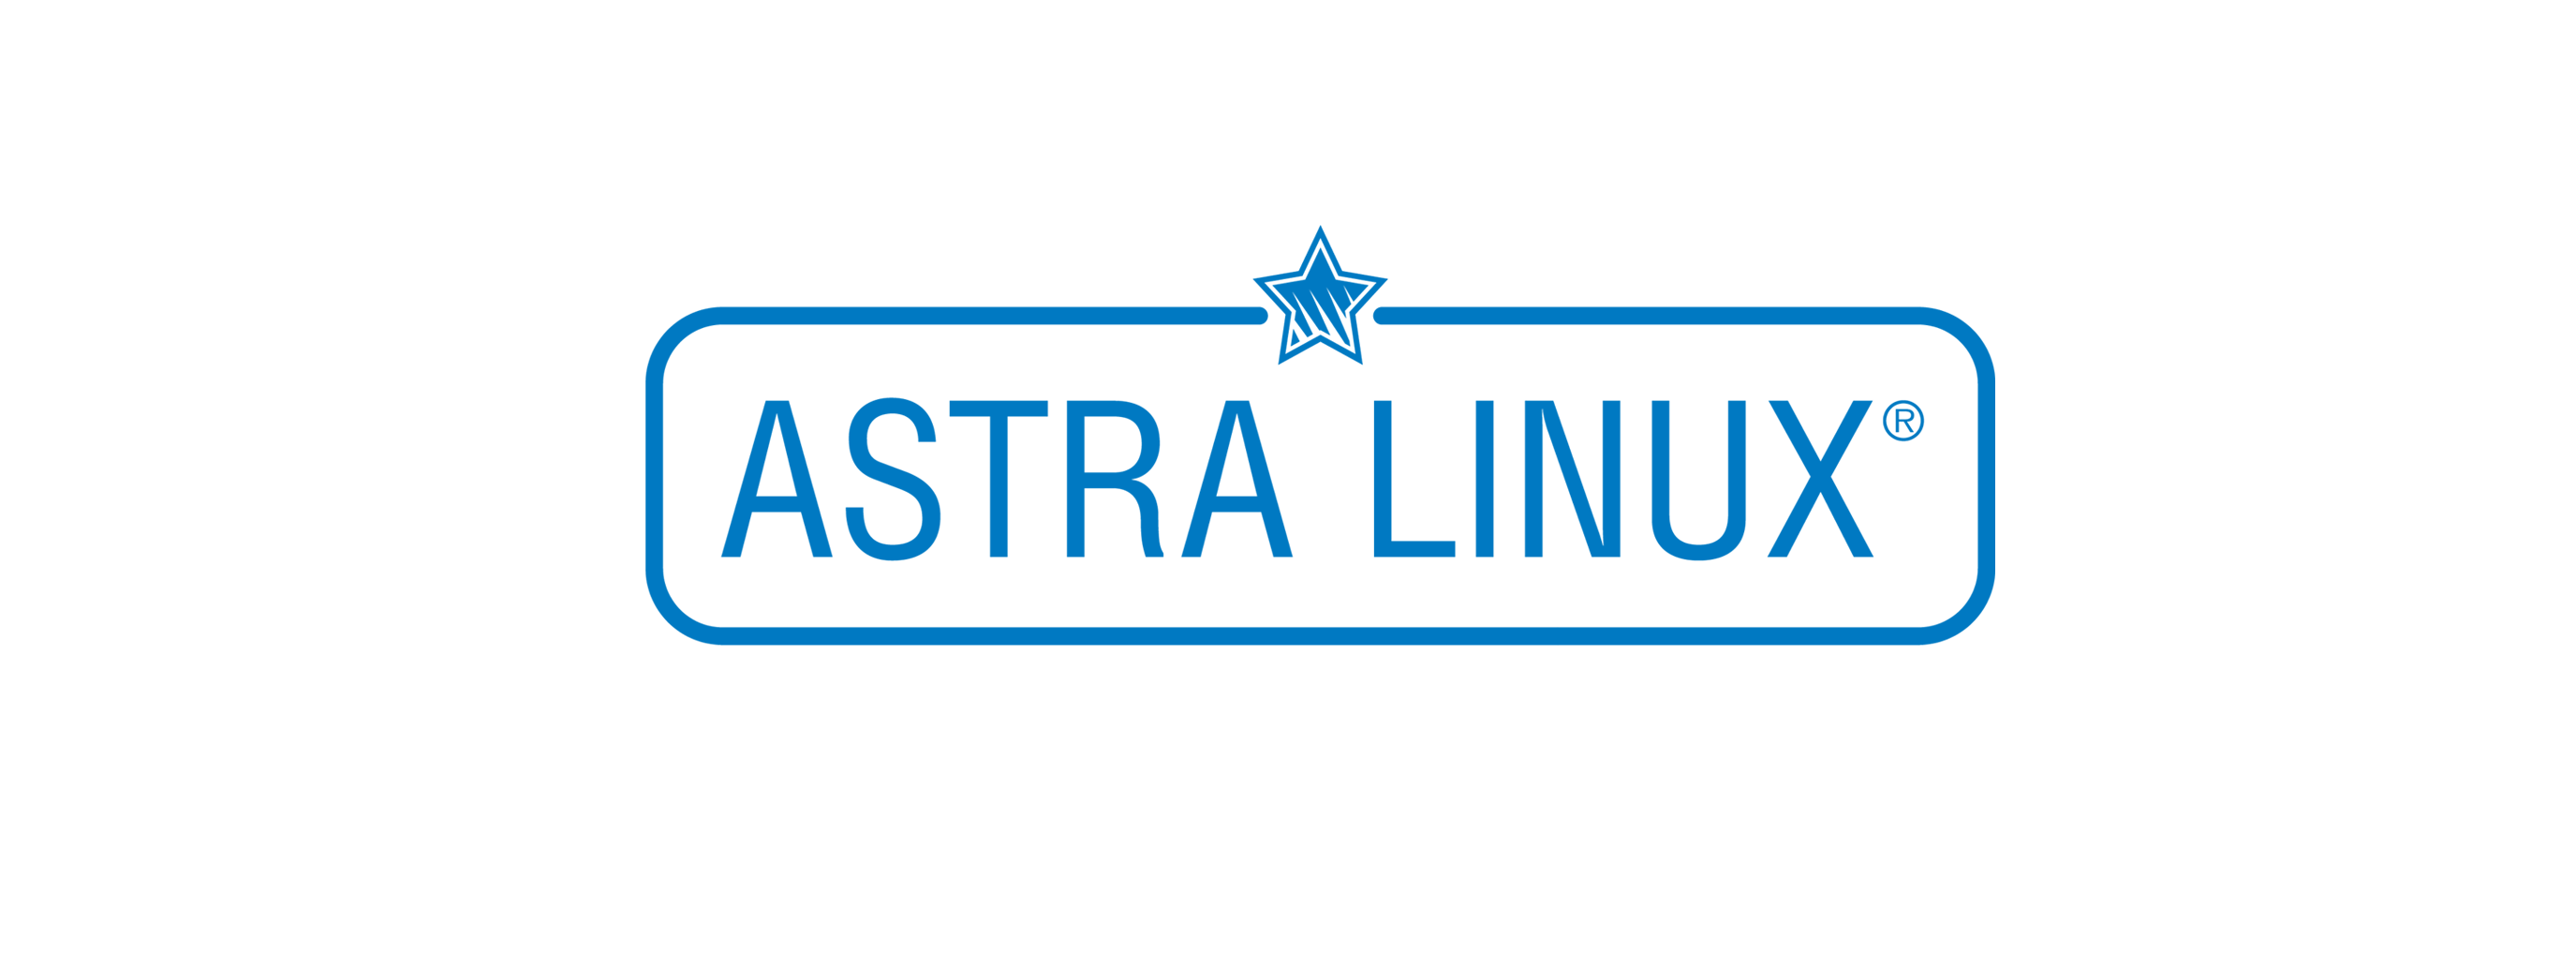 Лицензия РусБИТех Astra Linux Special Edition (очередное обновление 1.7), уровень защищенности Максимальный (Смоленск), РУСБ.10015-01 (ФСТЭК), Russian, на срок действия исключительного права базовая лицензия для виртуального сервера, электронный ключ (OS2 OS2101X8617DIG000VS01-PO36 Astra Linux Special Edition (очередное обновление 1.7), уровень защищенности Максимальный (Смоленск) - фото 1